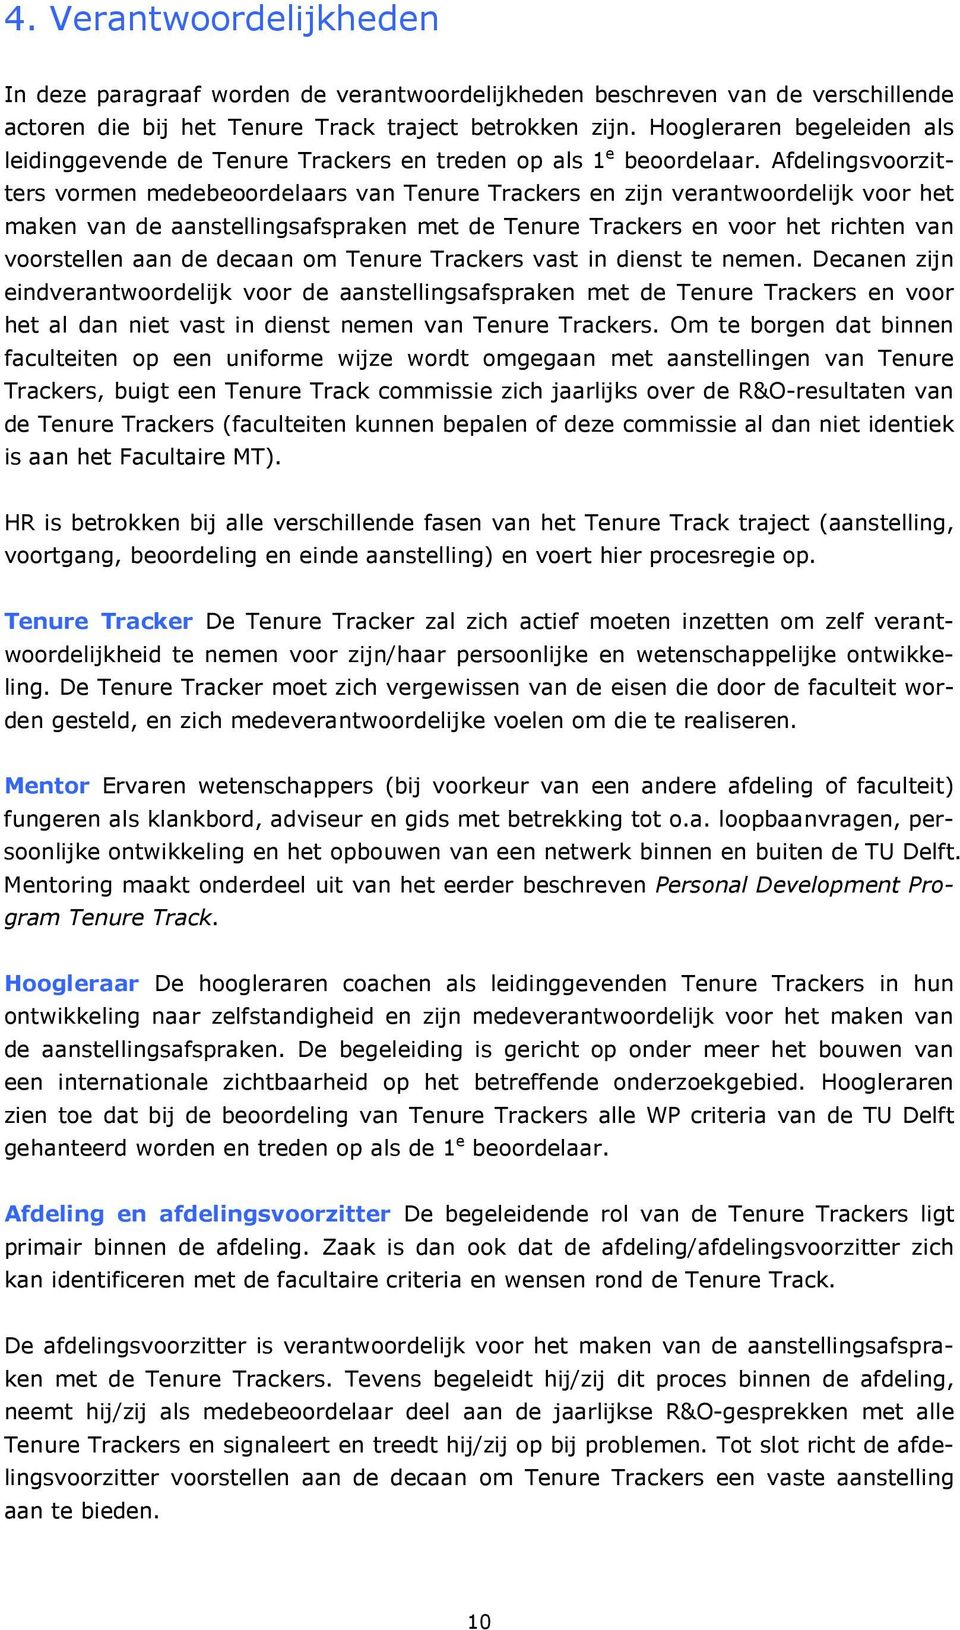 Afdelingsvoorzitters vormen medebeoordelaars van Tenure Trackers en zijn verantwoordelijk voor het maken van de aanstellingsafspraken met de Tenure Trackers en voor het richten van voorstellen aan de